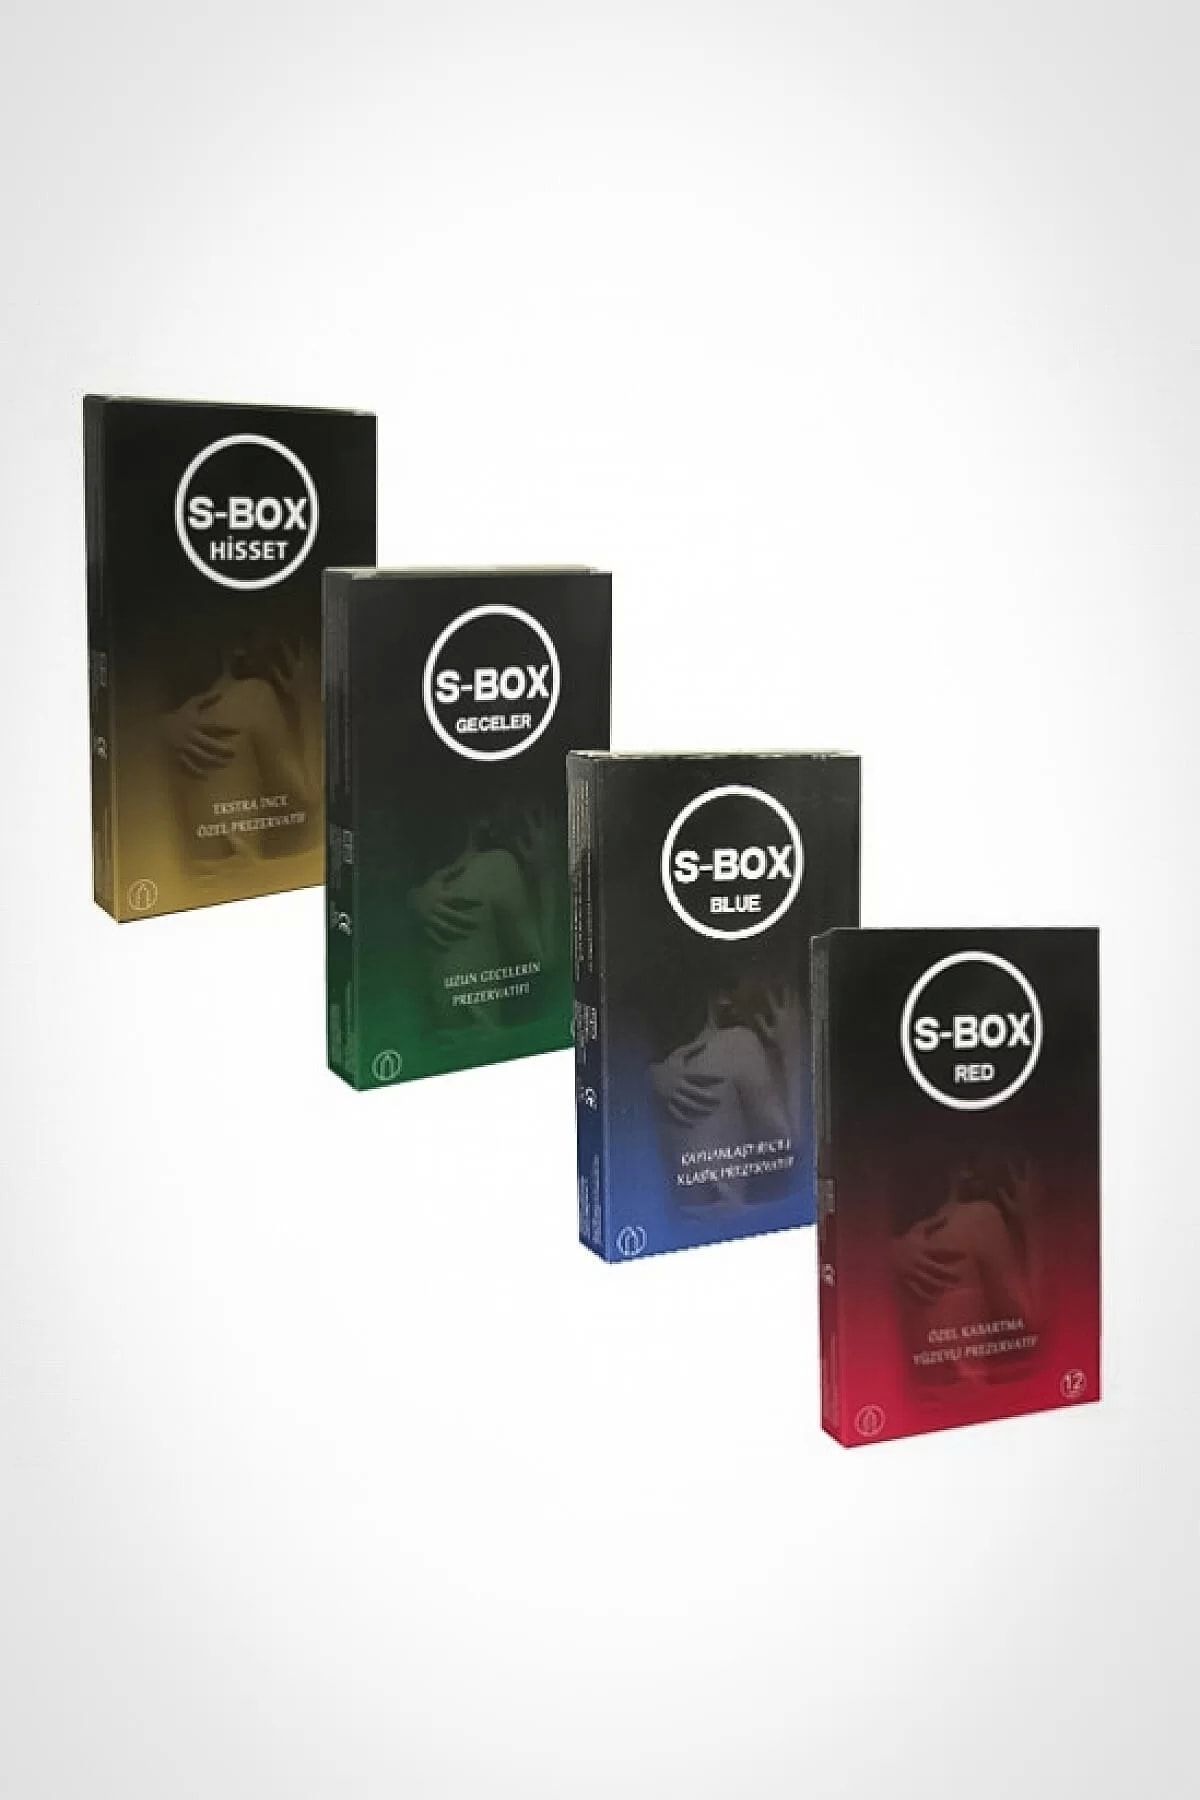 S-Box Prezervatif Karma Paket 48 Adet Condom